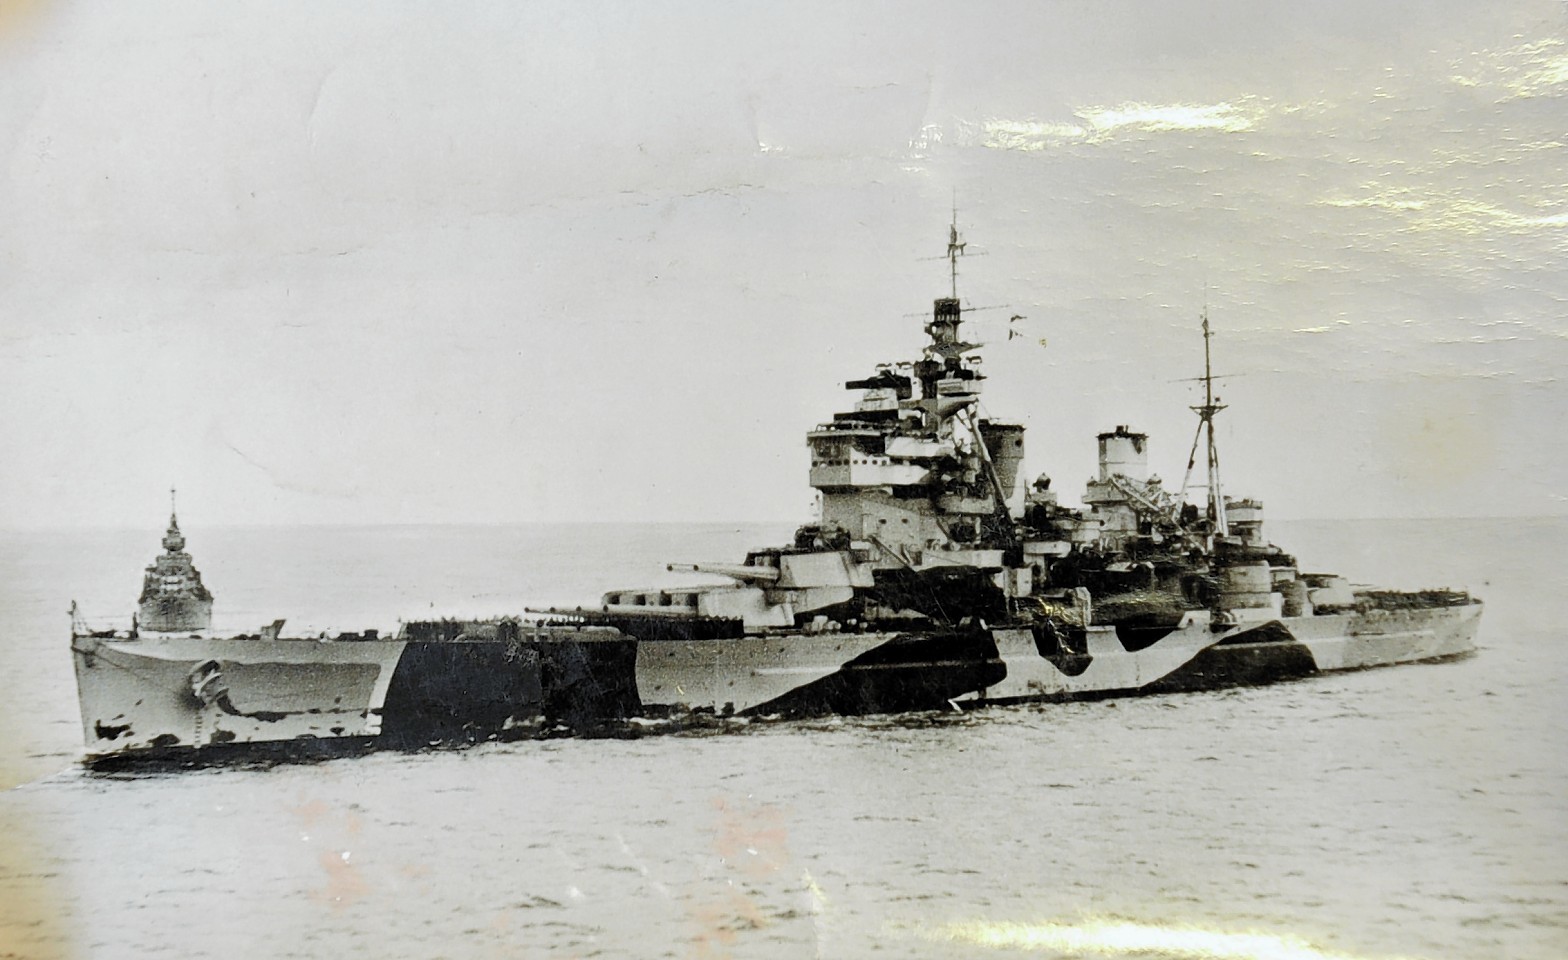 The HMS Anson